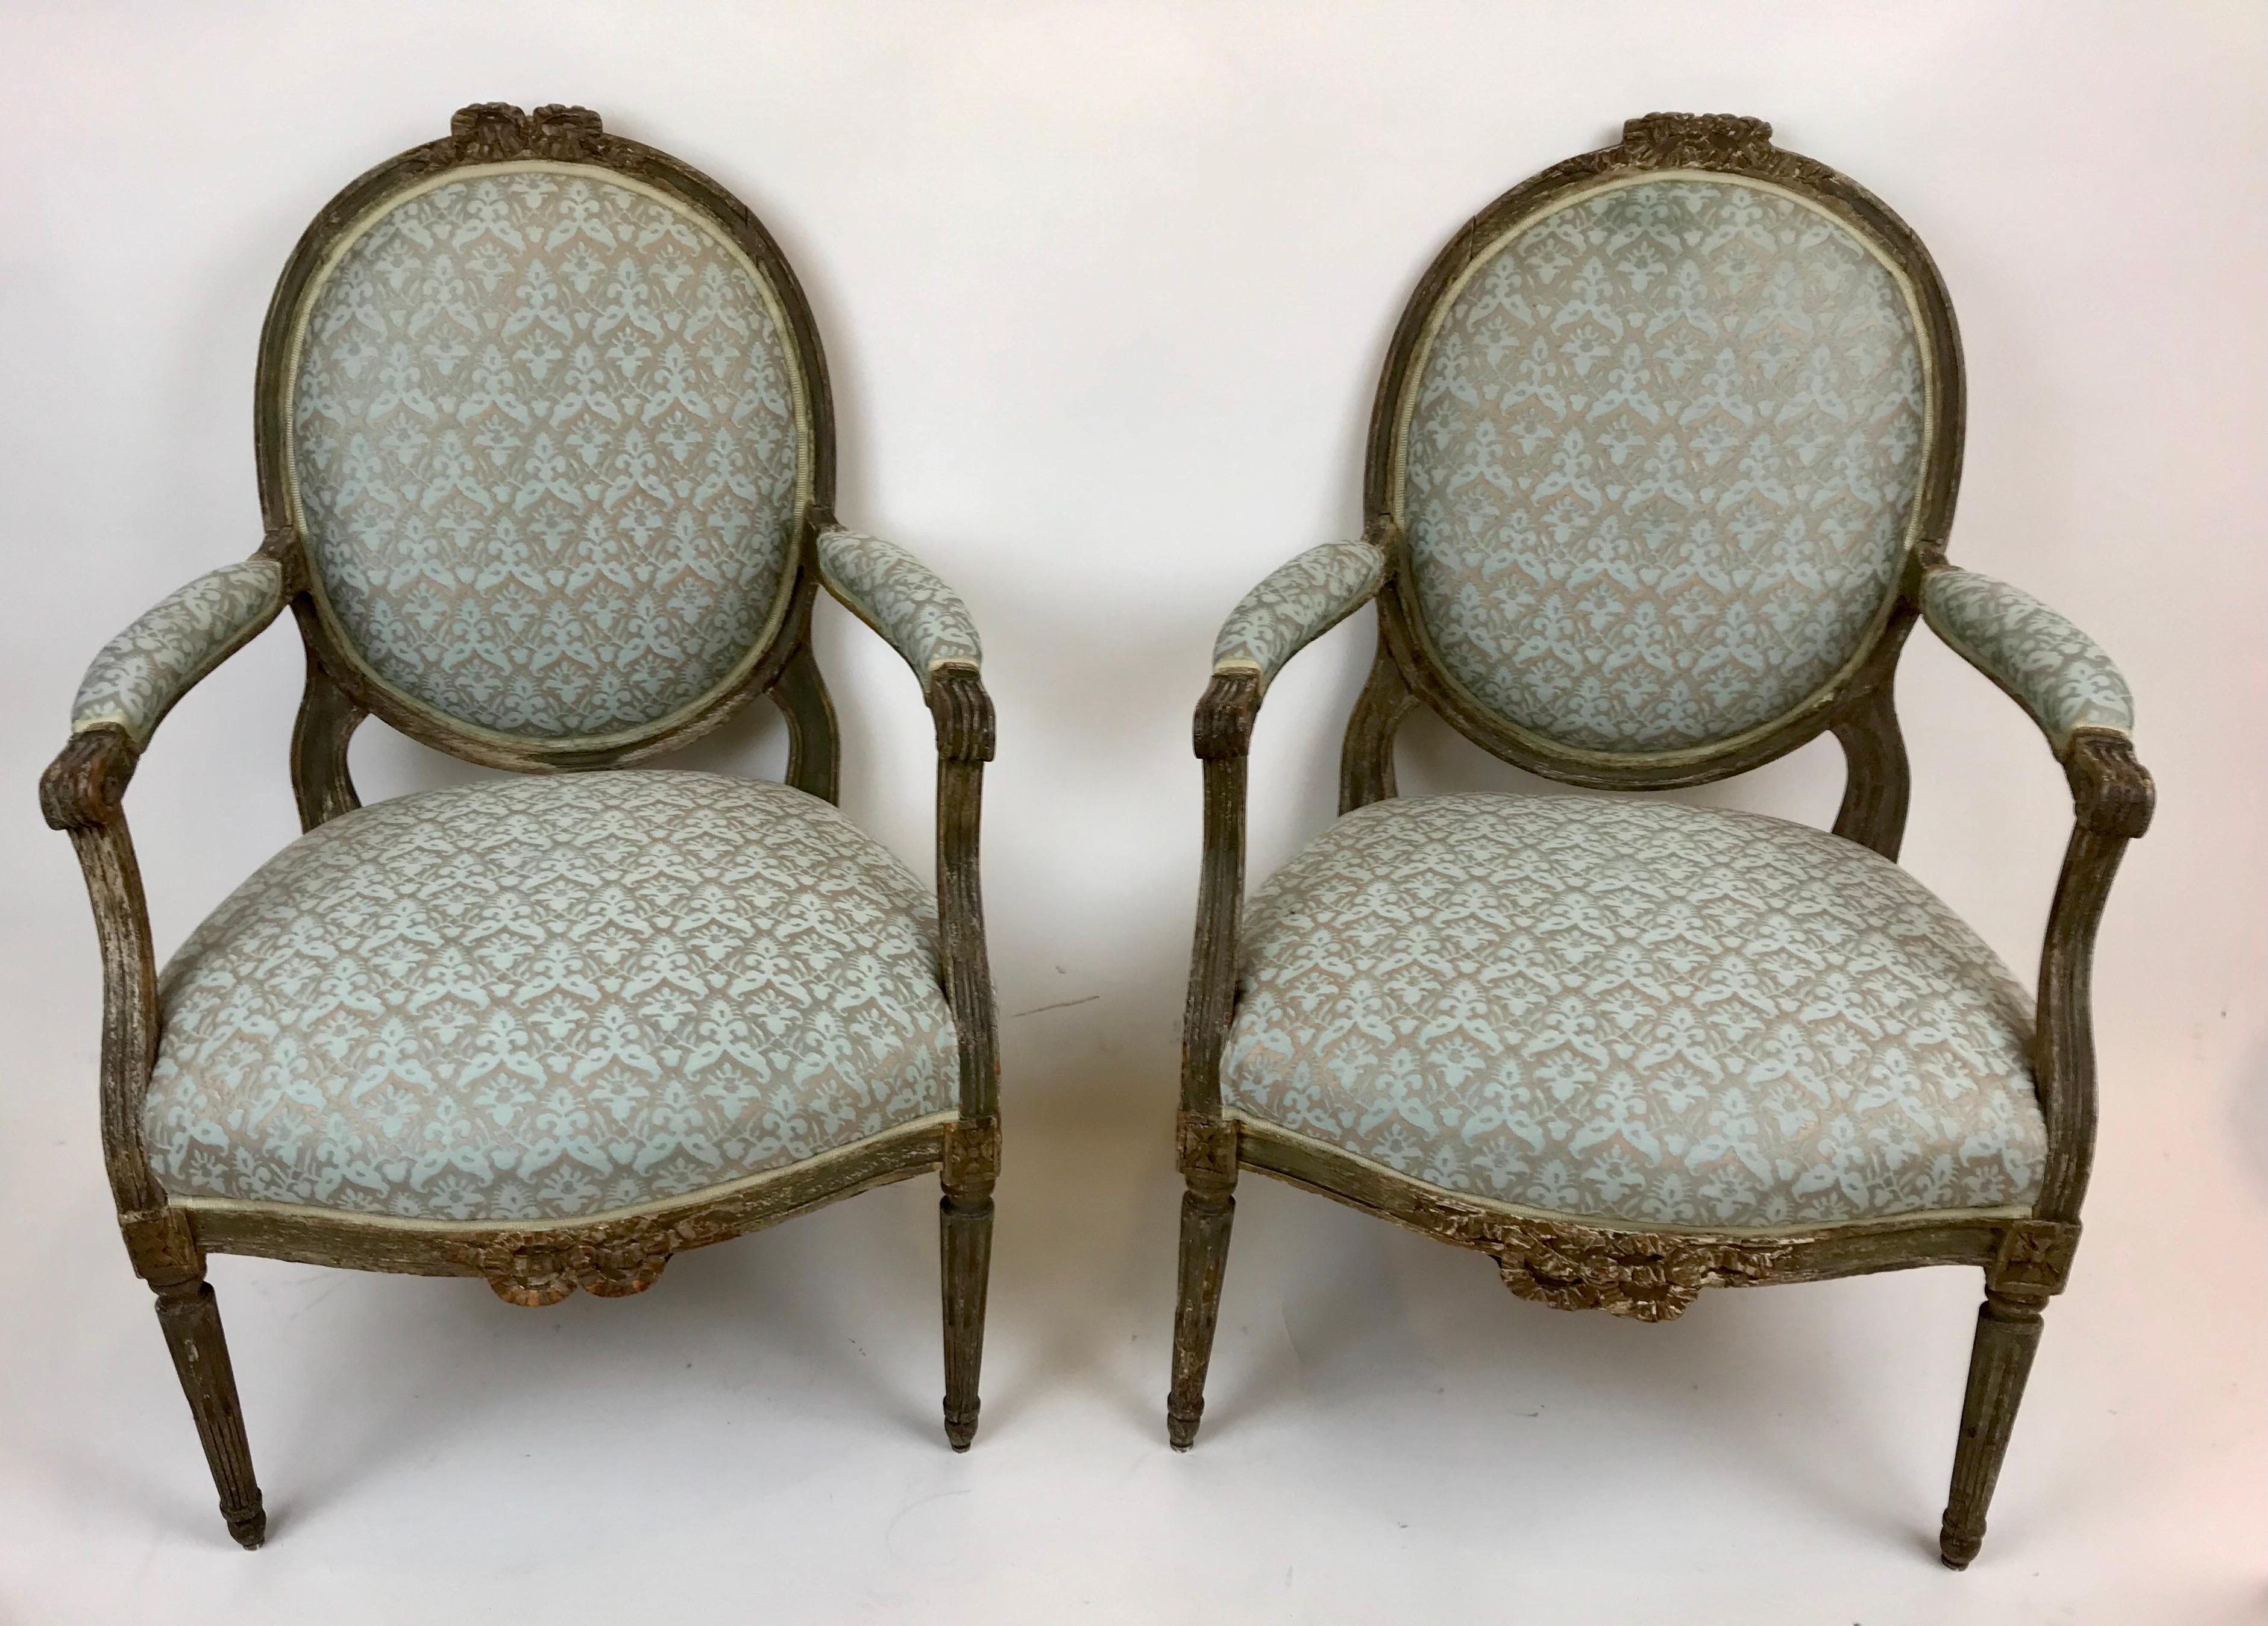 Dieses hübsche Paar provinzieller Stühle mit ovaler Rückenlehne zeichnet sich durch geschnitzte Bogenknoten und konisch zulaufende Beine aus. Sie sind derzeit mit geblümtem Fortuny-Stoff bezogen.